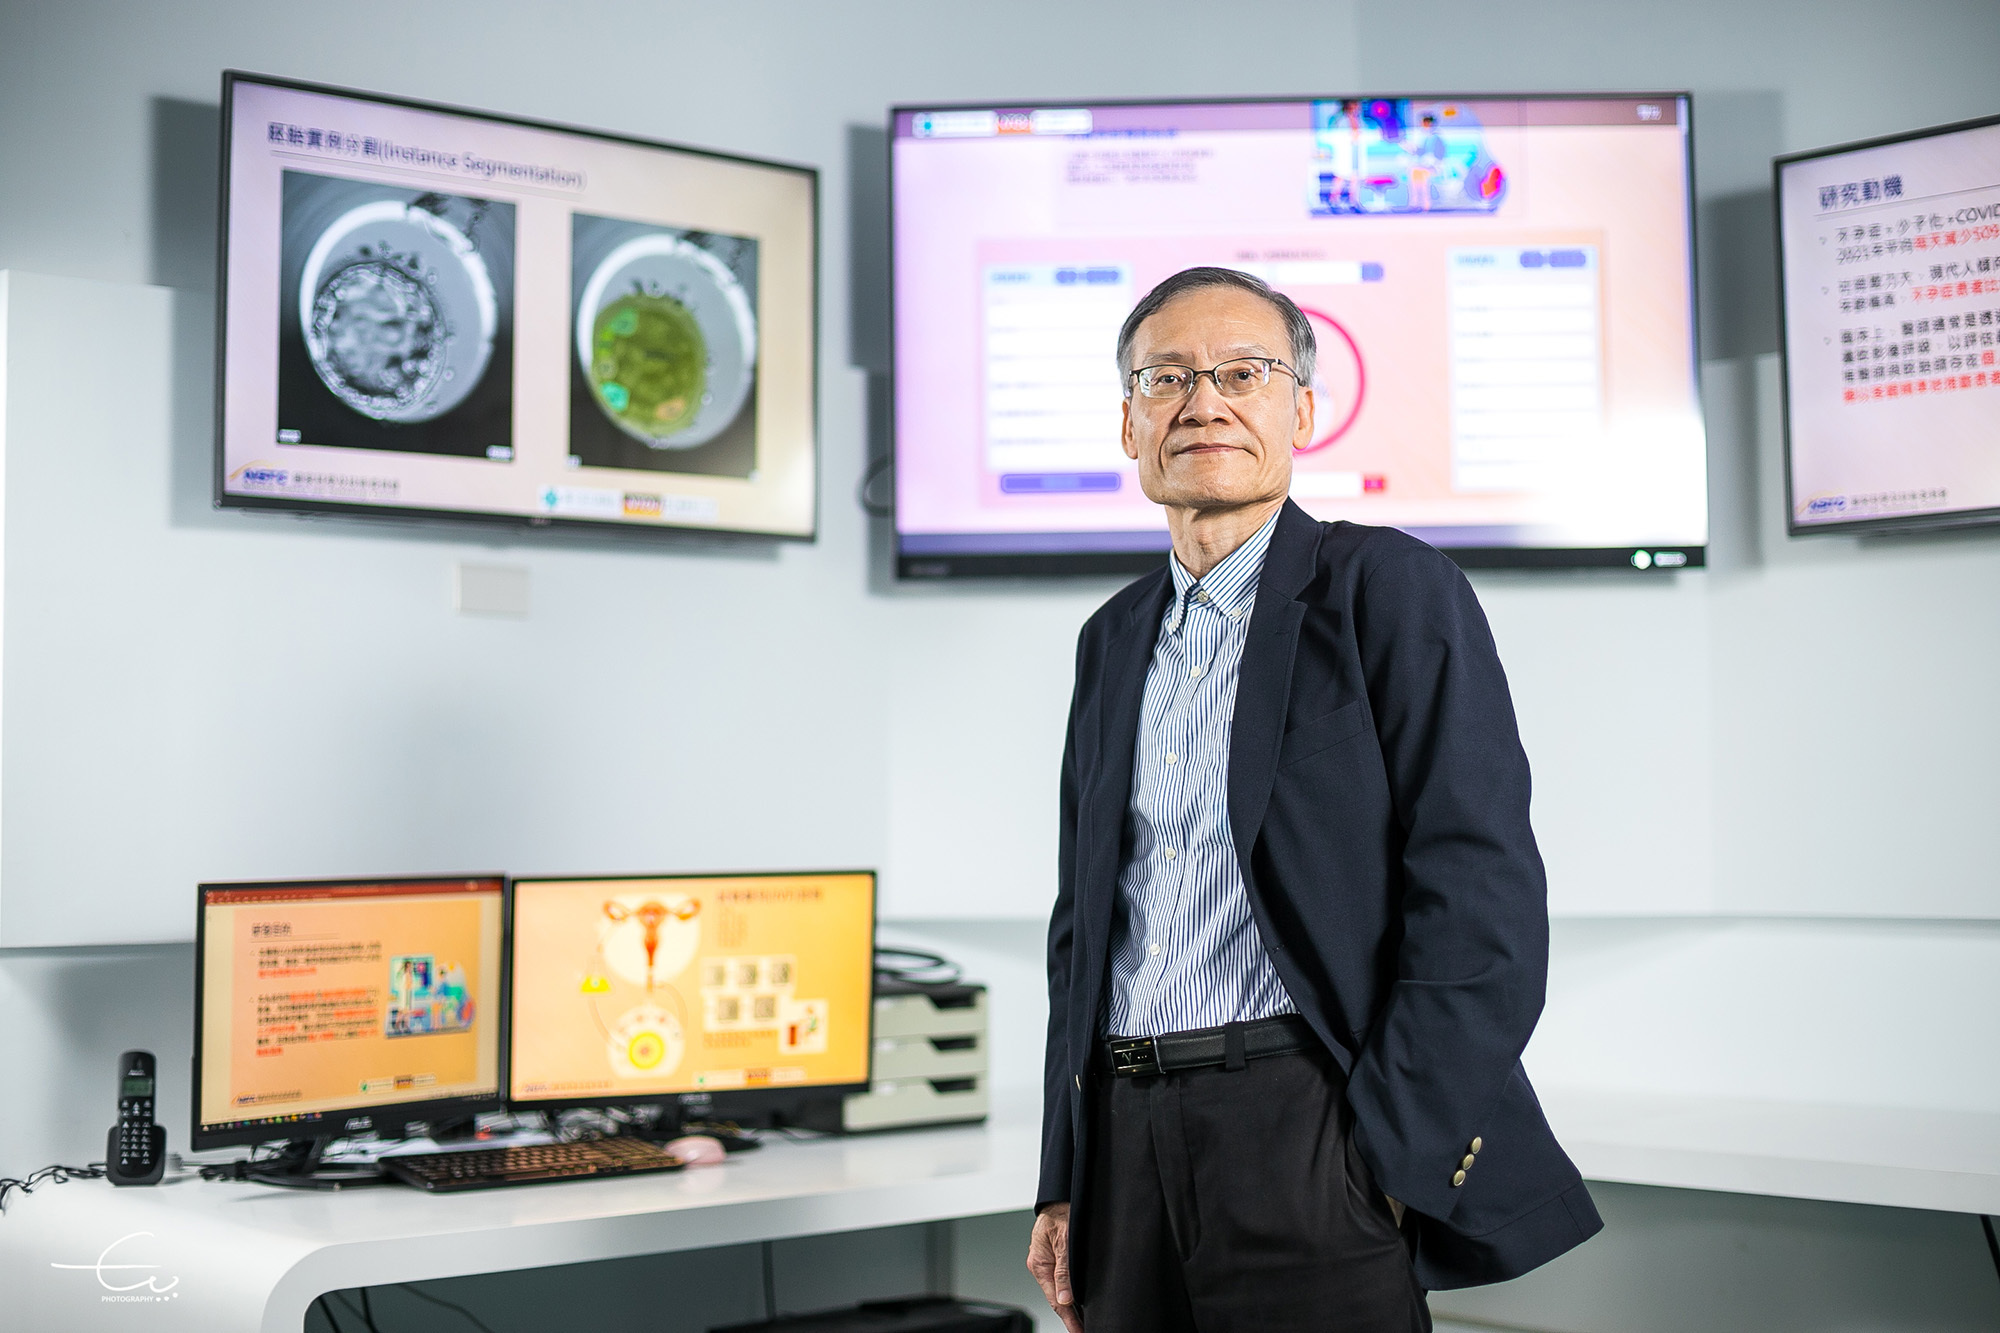 海大電機系王榮華教授AI囊胚影像判讀系統 獲醫界專家肯定